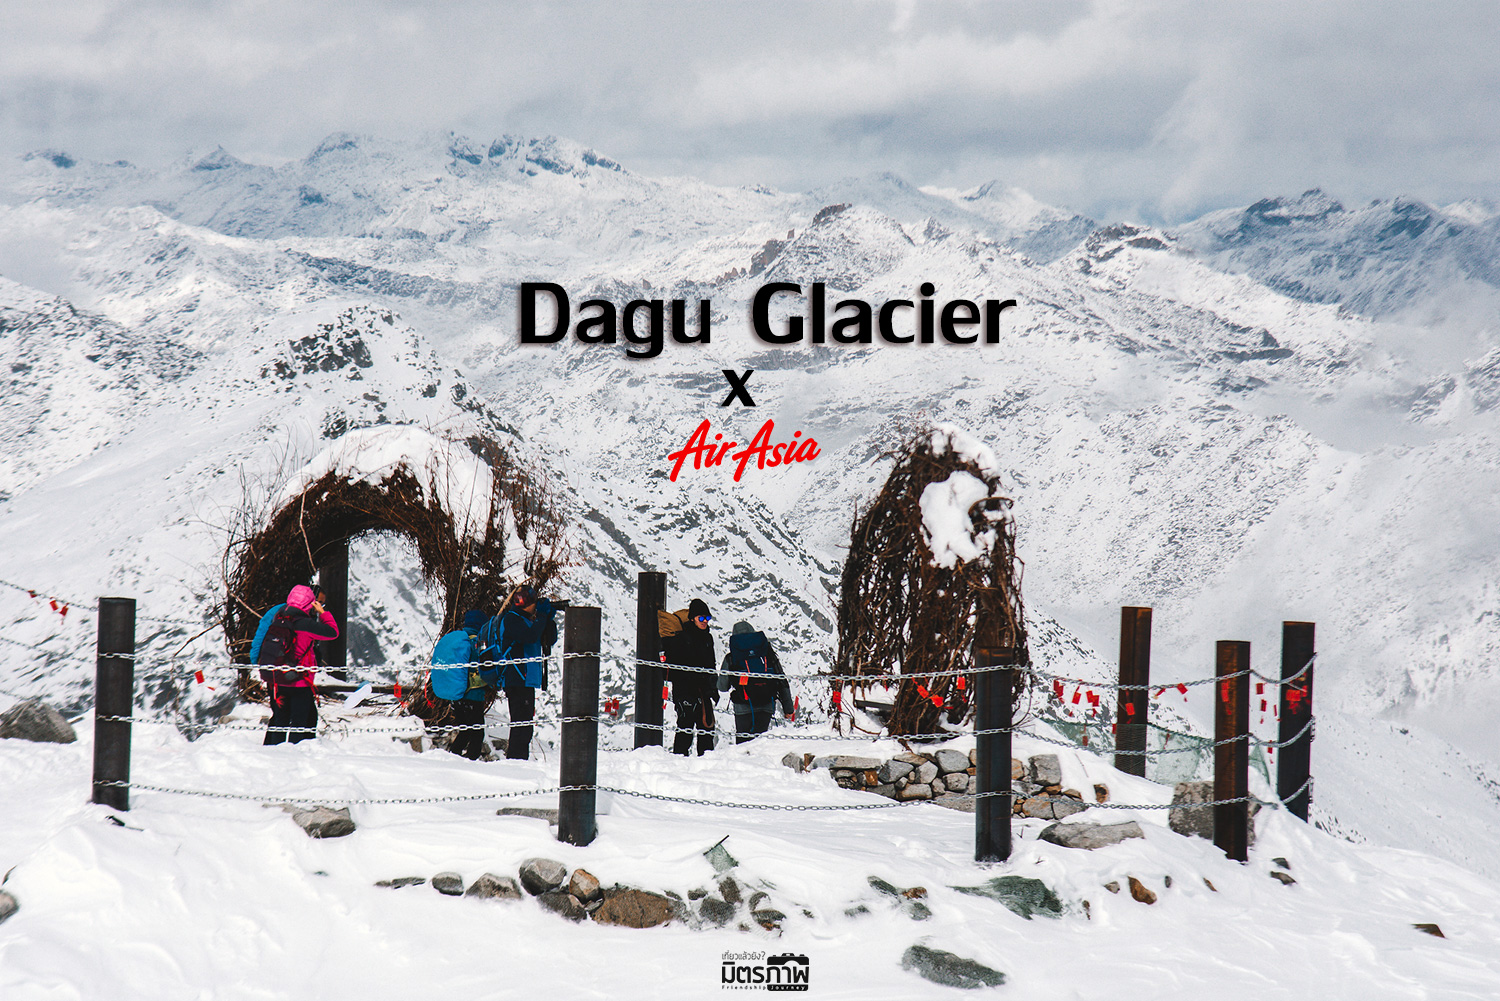 รีวิวเที่ยวจีน ตามหาความขาว หนาวเย็น ที่ภูเขาหิมะ ต๋ากู่ปิงชวน : Dagu glacier